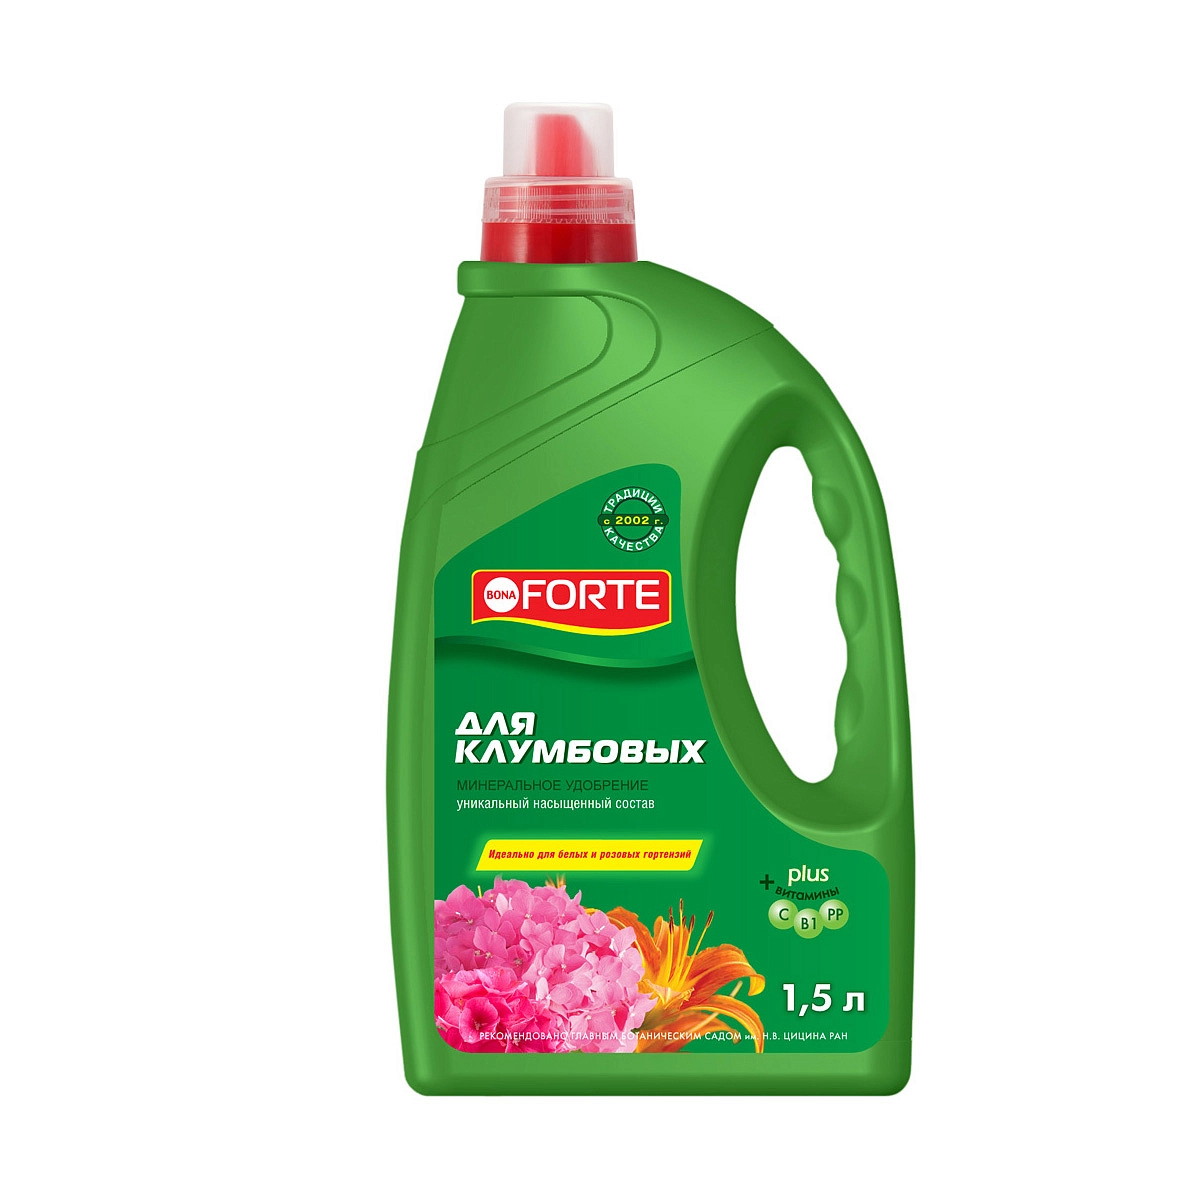 Удобрение цветочное Bona Forte Жидкое для Клумбовых и розовых гортензий 1,5л